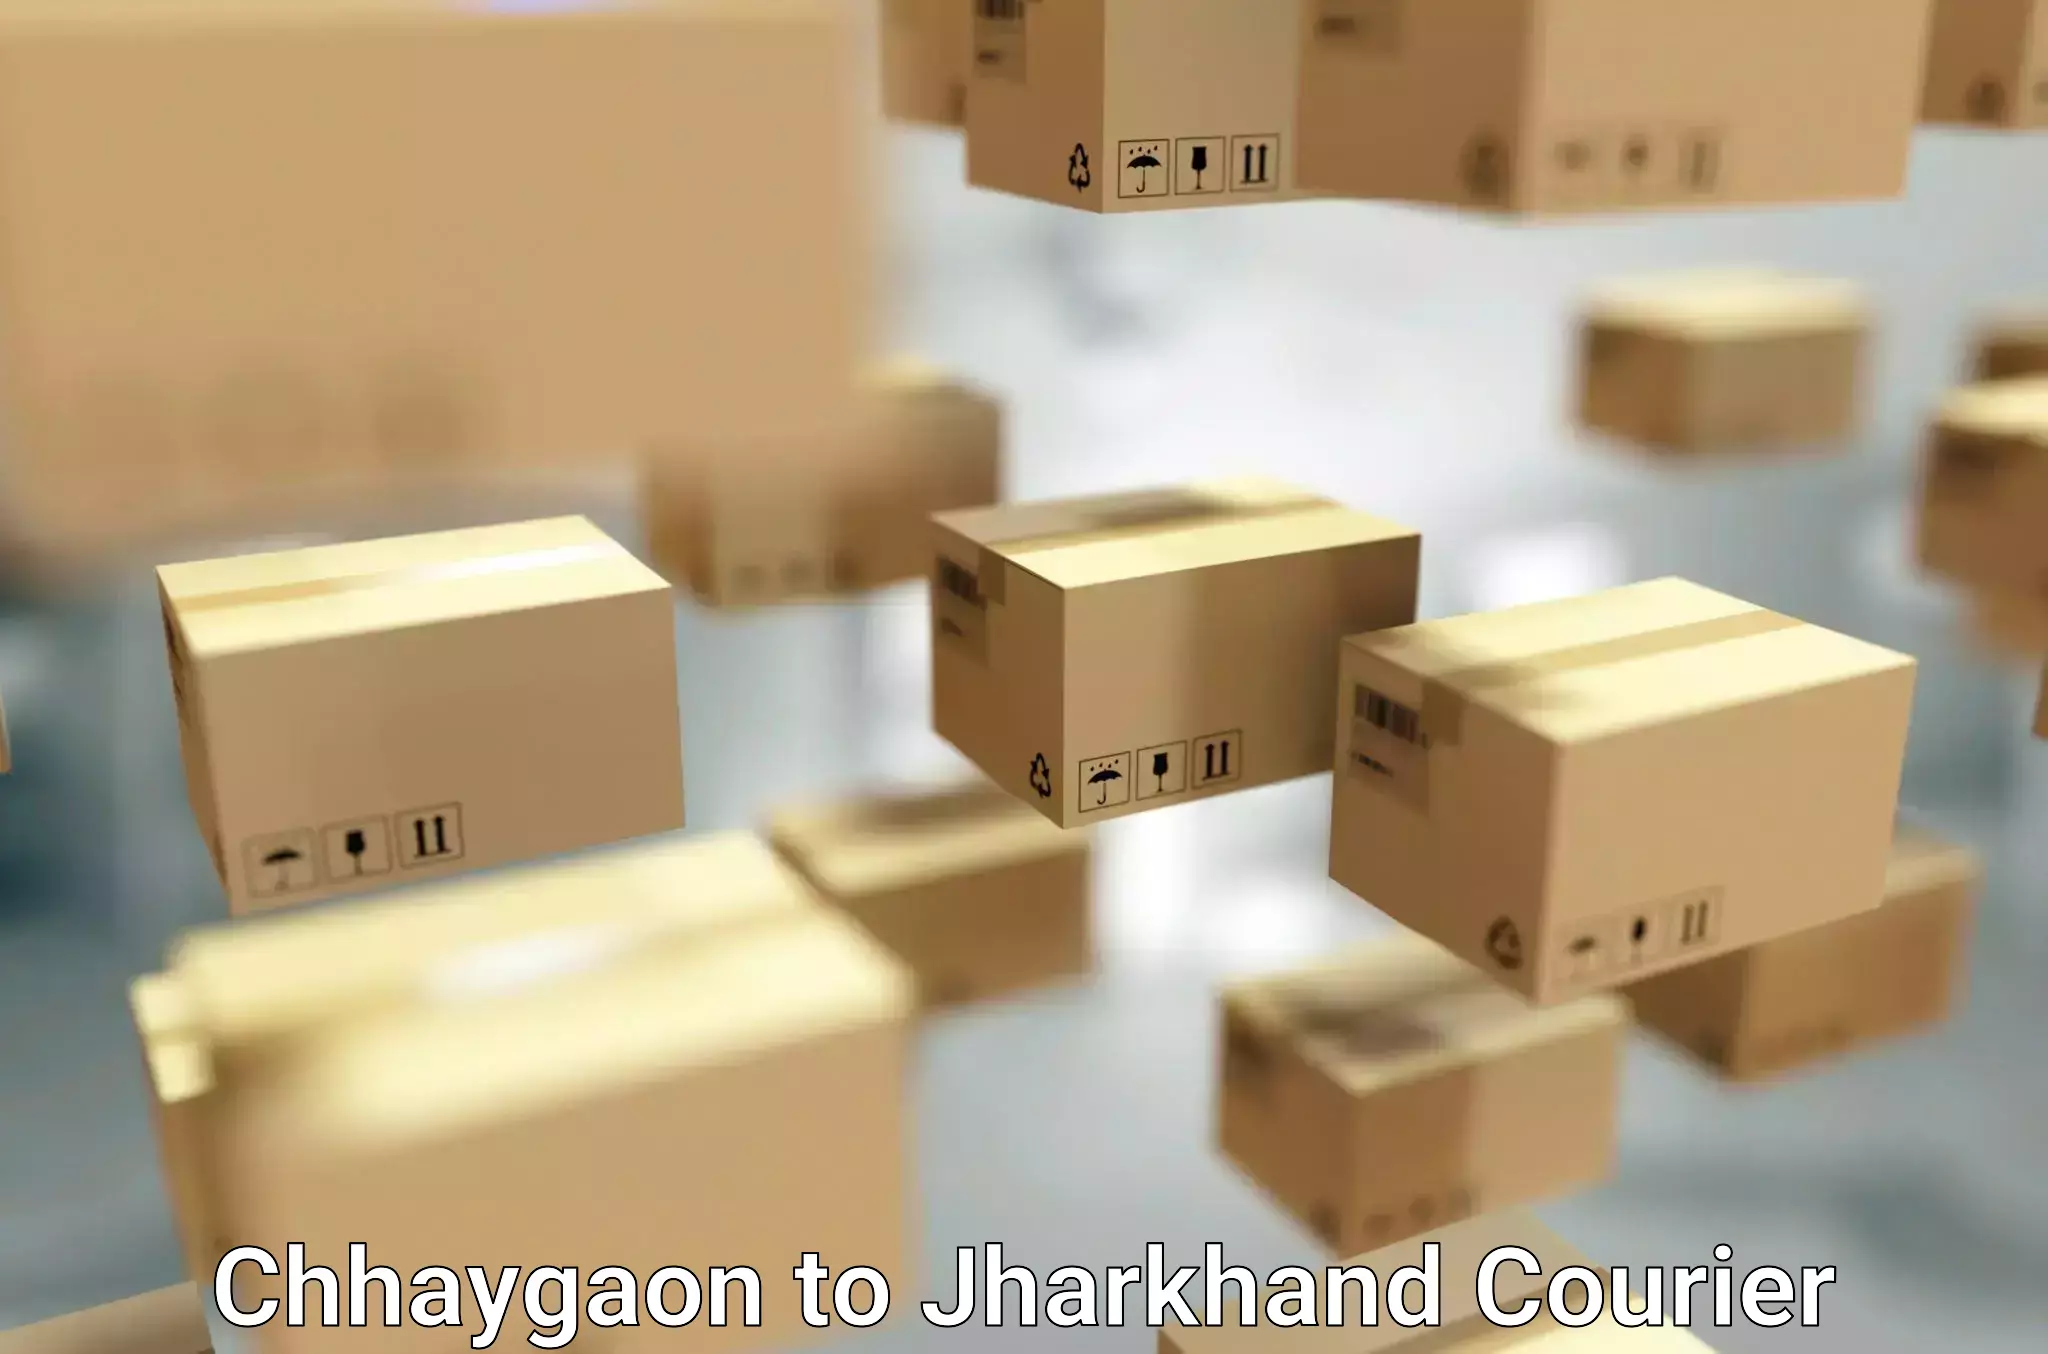 Packing and moving services Chhaygaon to Seraikela Kharsawan